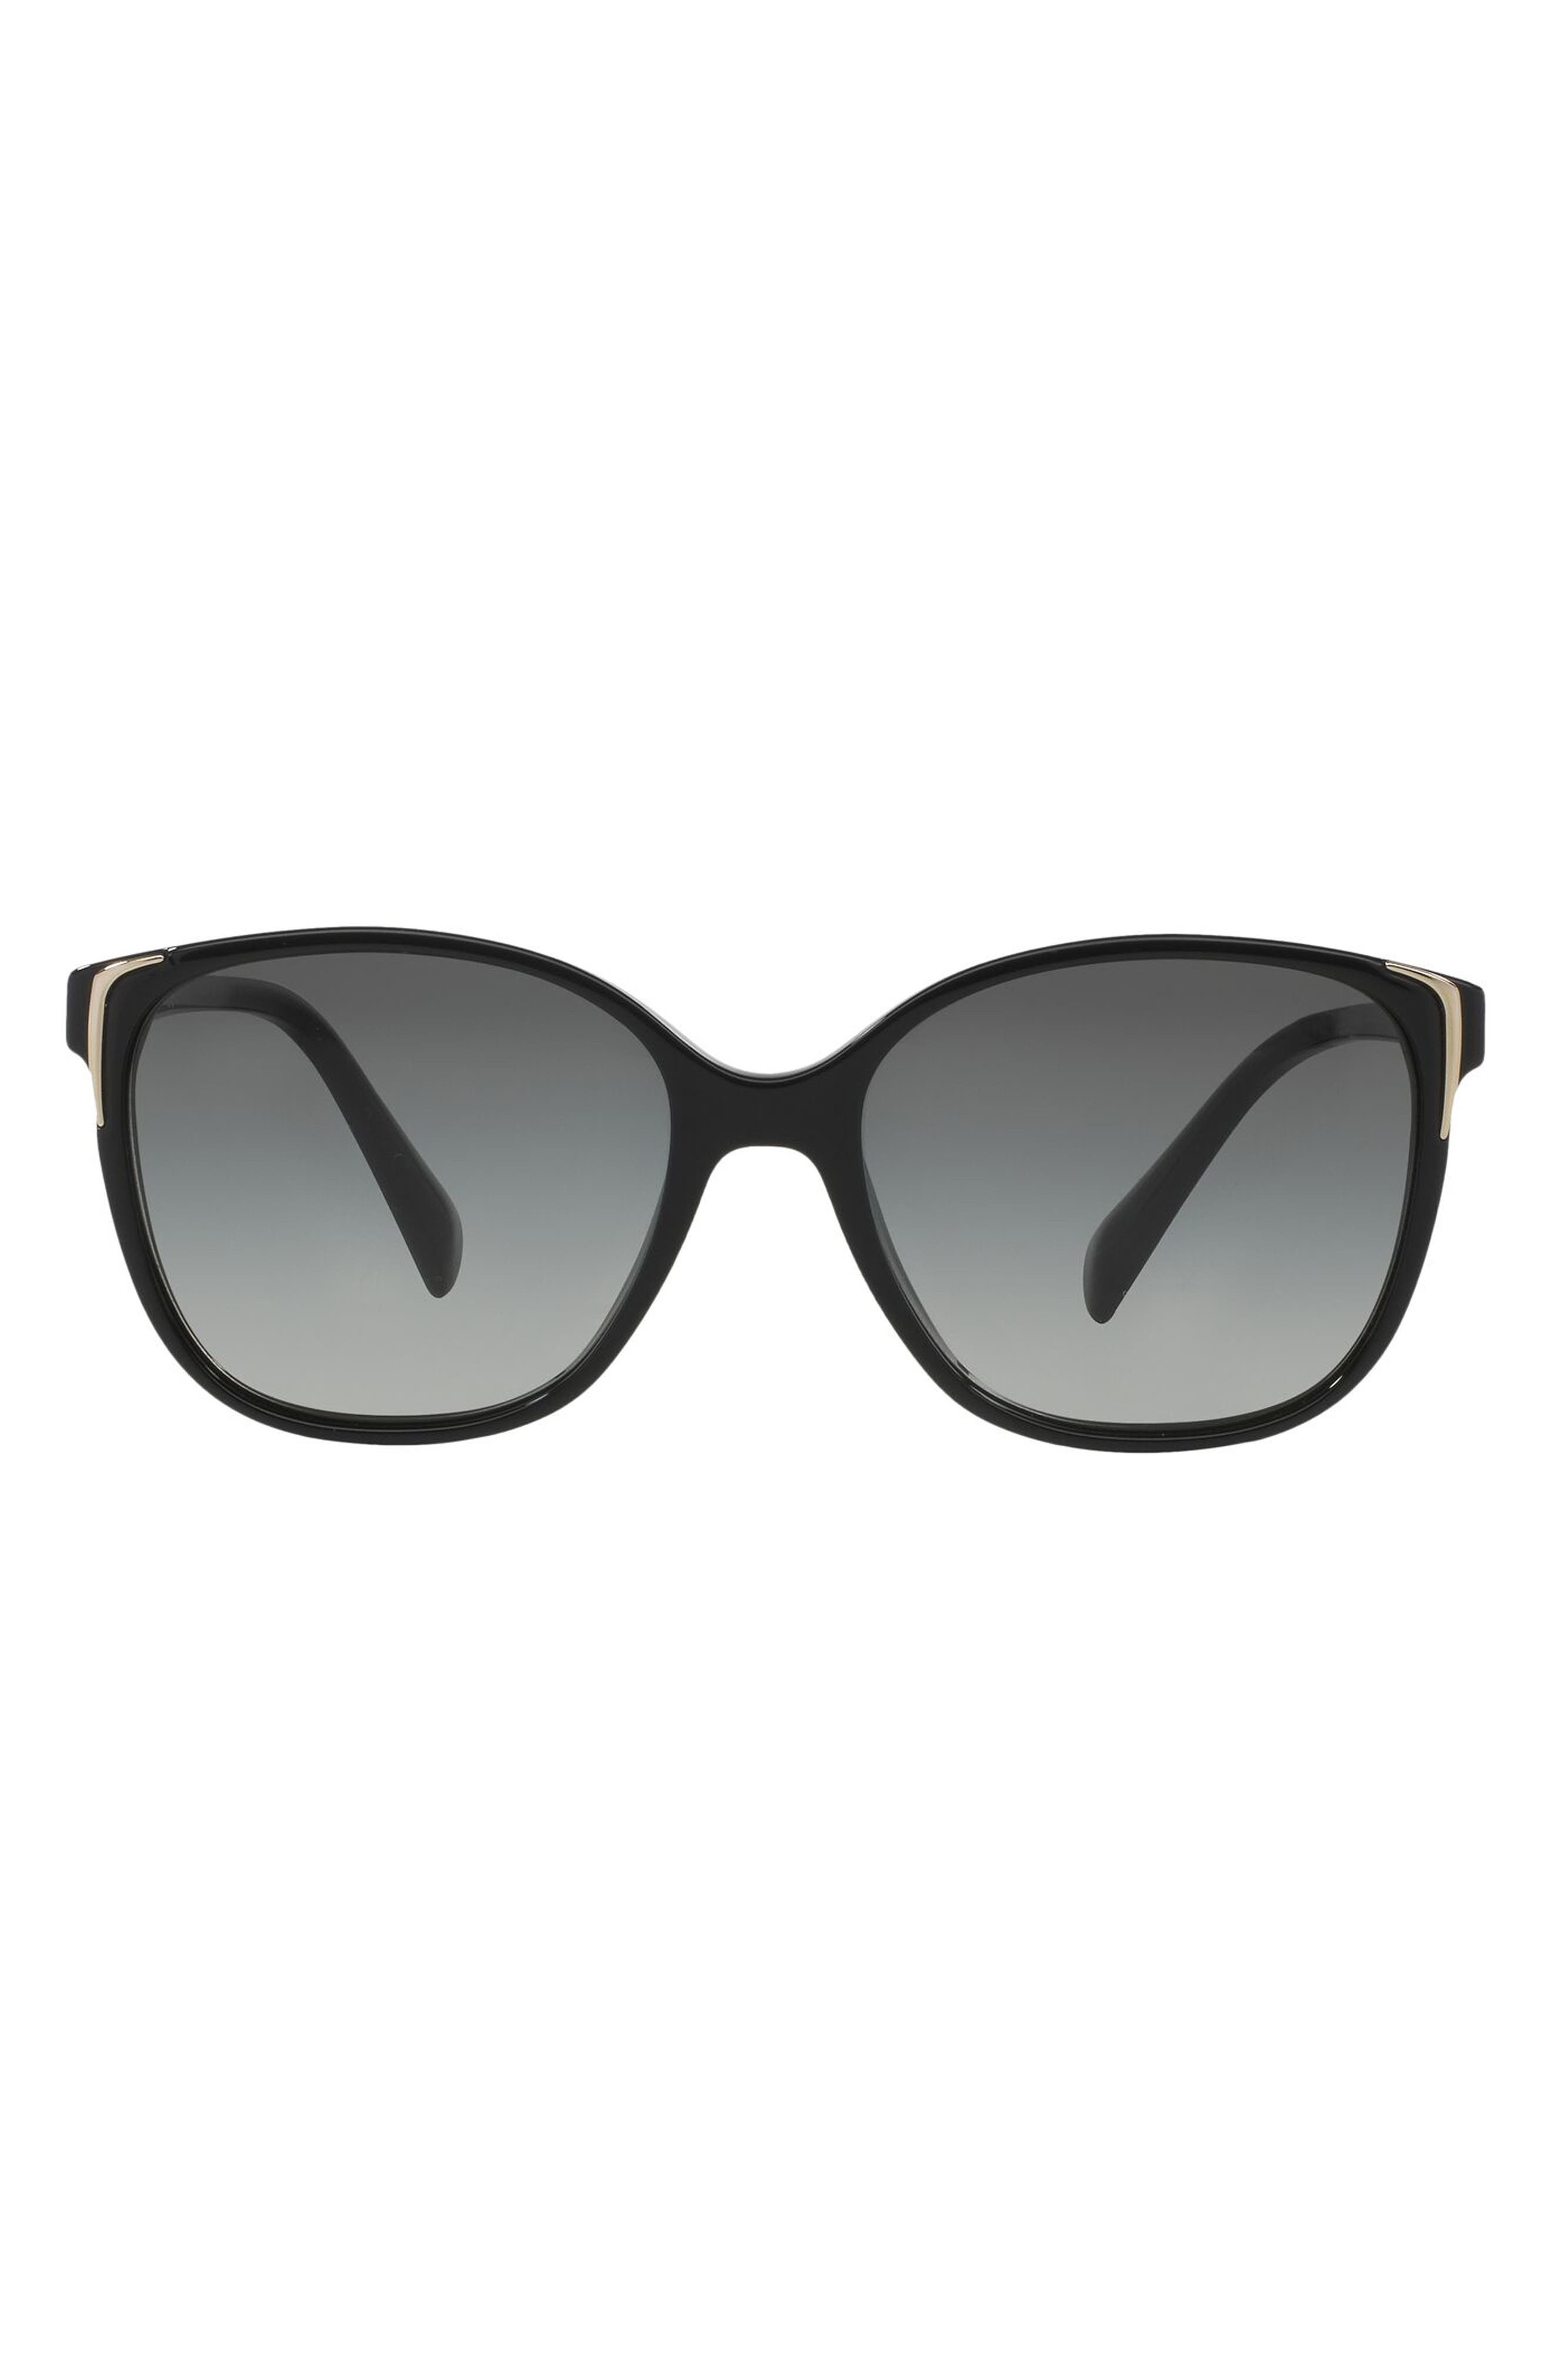 Prada 55mm Sunglasses in Black at Nordstrom